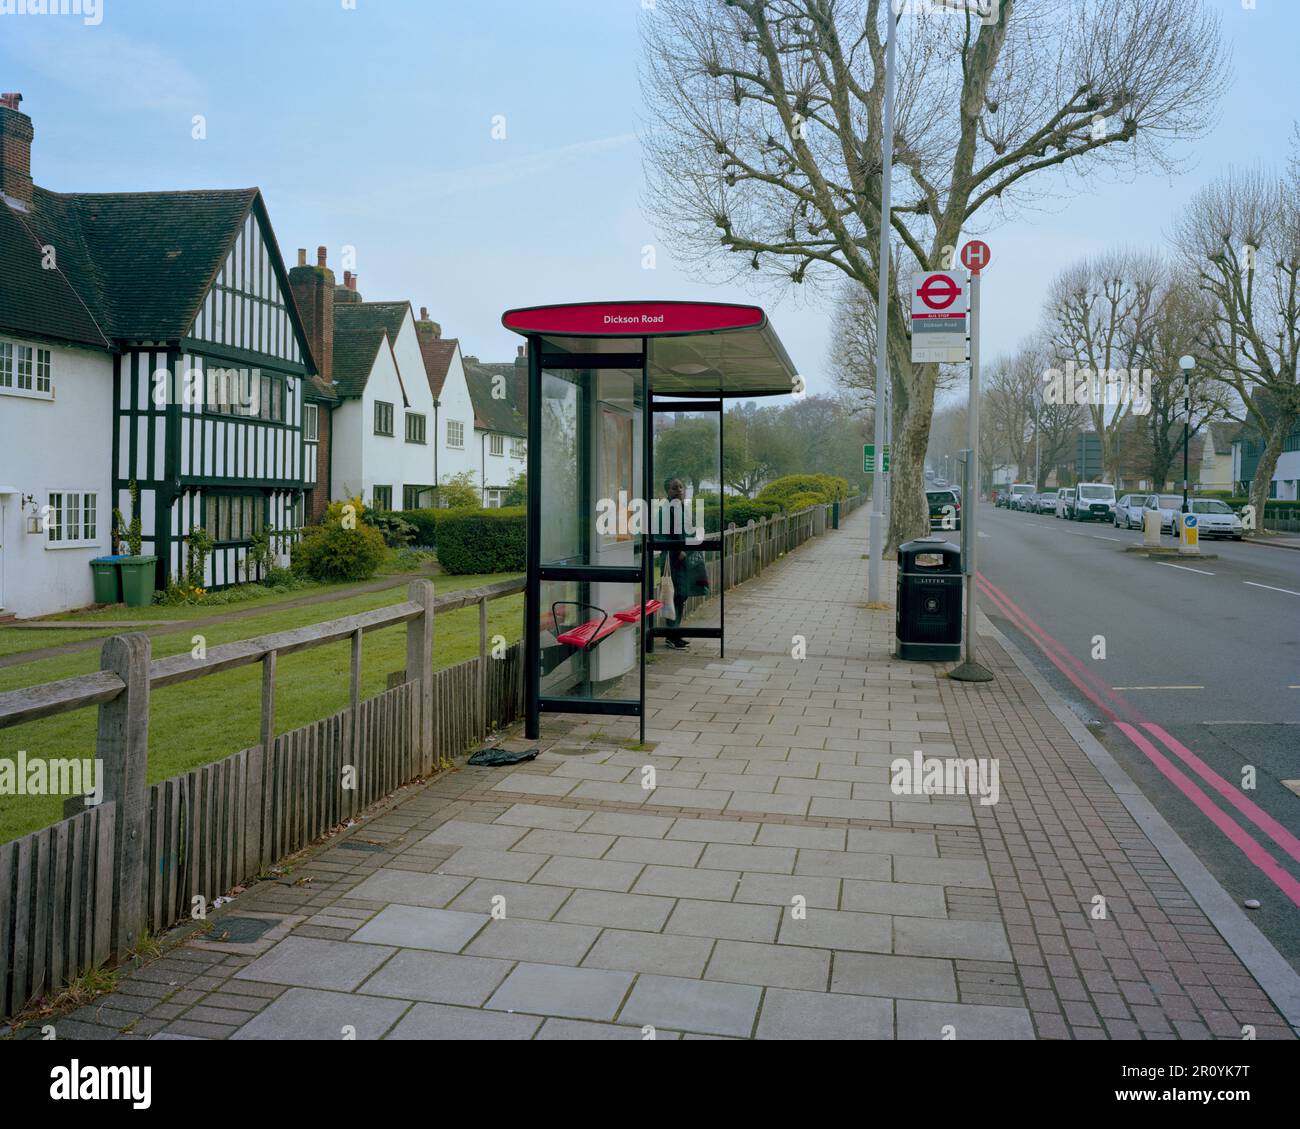 Bushaltestelle auf der Well Hall Road, London, wo Stephen Lawrence, der schwarze britische Teenager, bei einem rassistisch motivierten Angriff ermordet wurde. Stockfoto